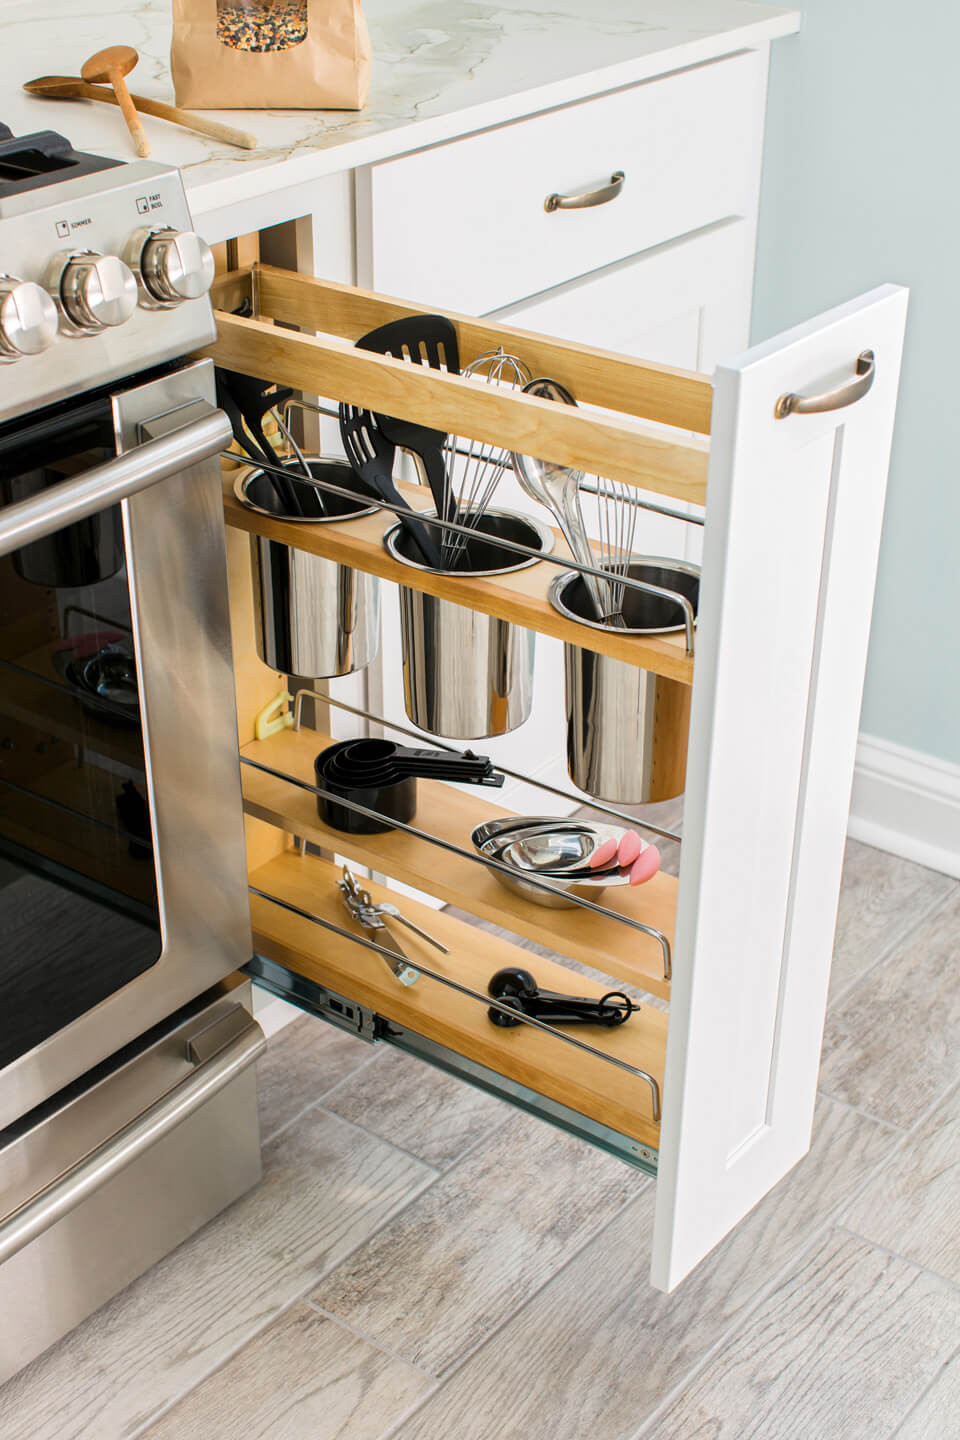 Kitchen Storage Tips
 35 Best Small Kitchen Storage Organization Ideas and